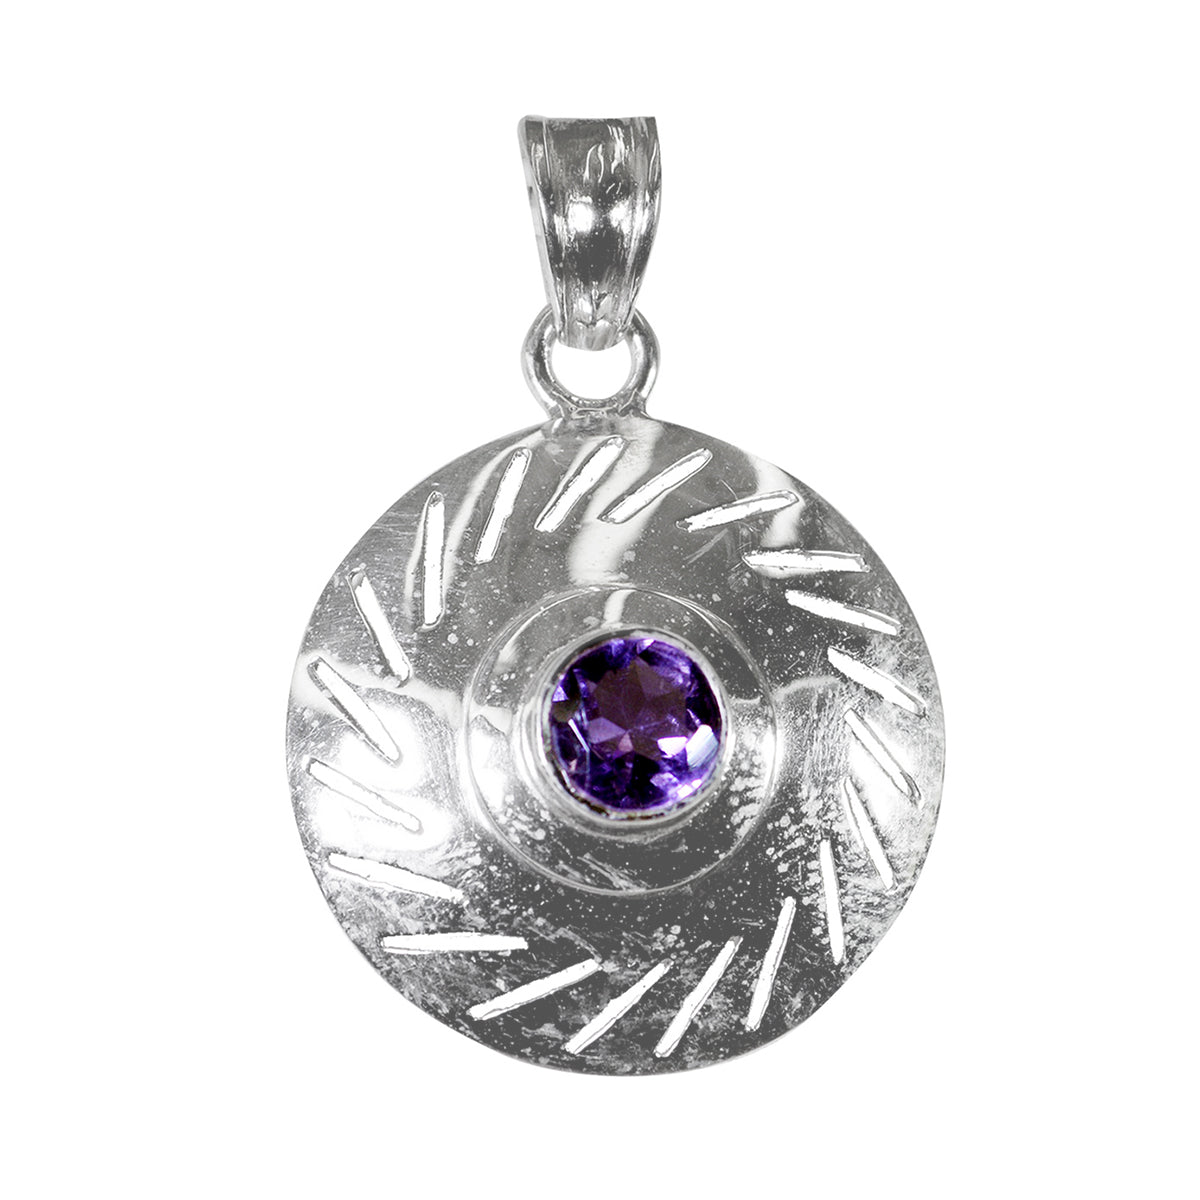 Riyo preciosas gemas redondas facetadas amatista púrpura colgante de plata regalo para esposa